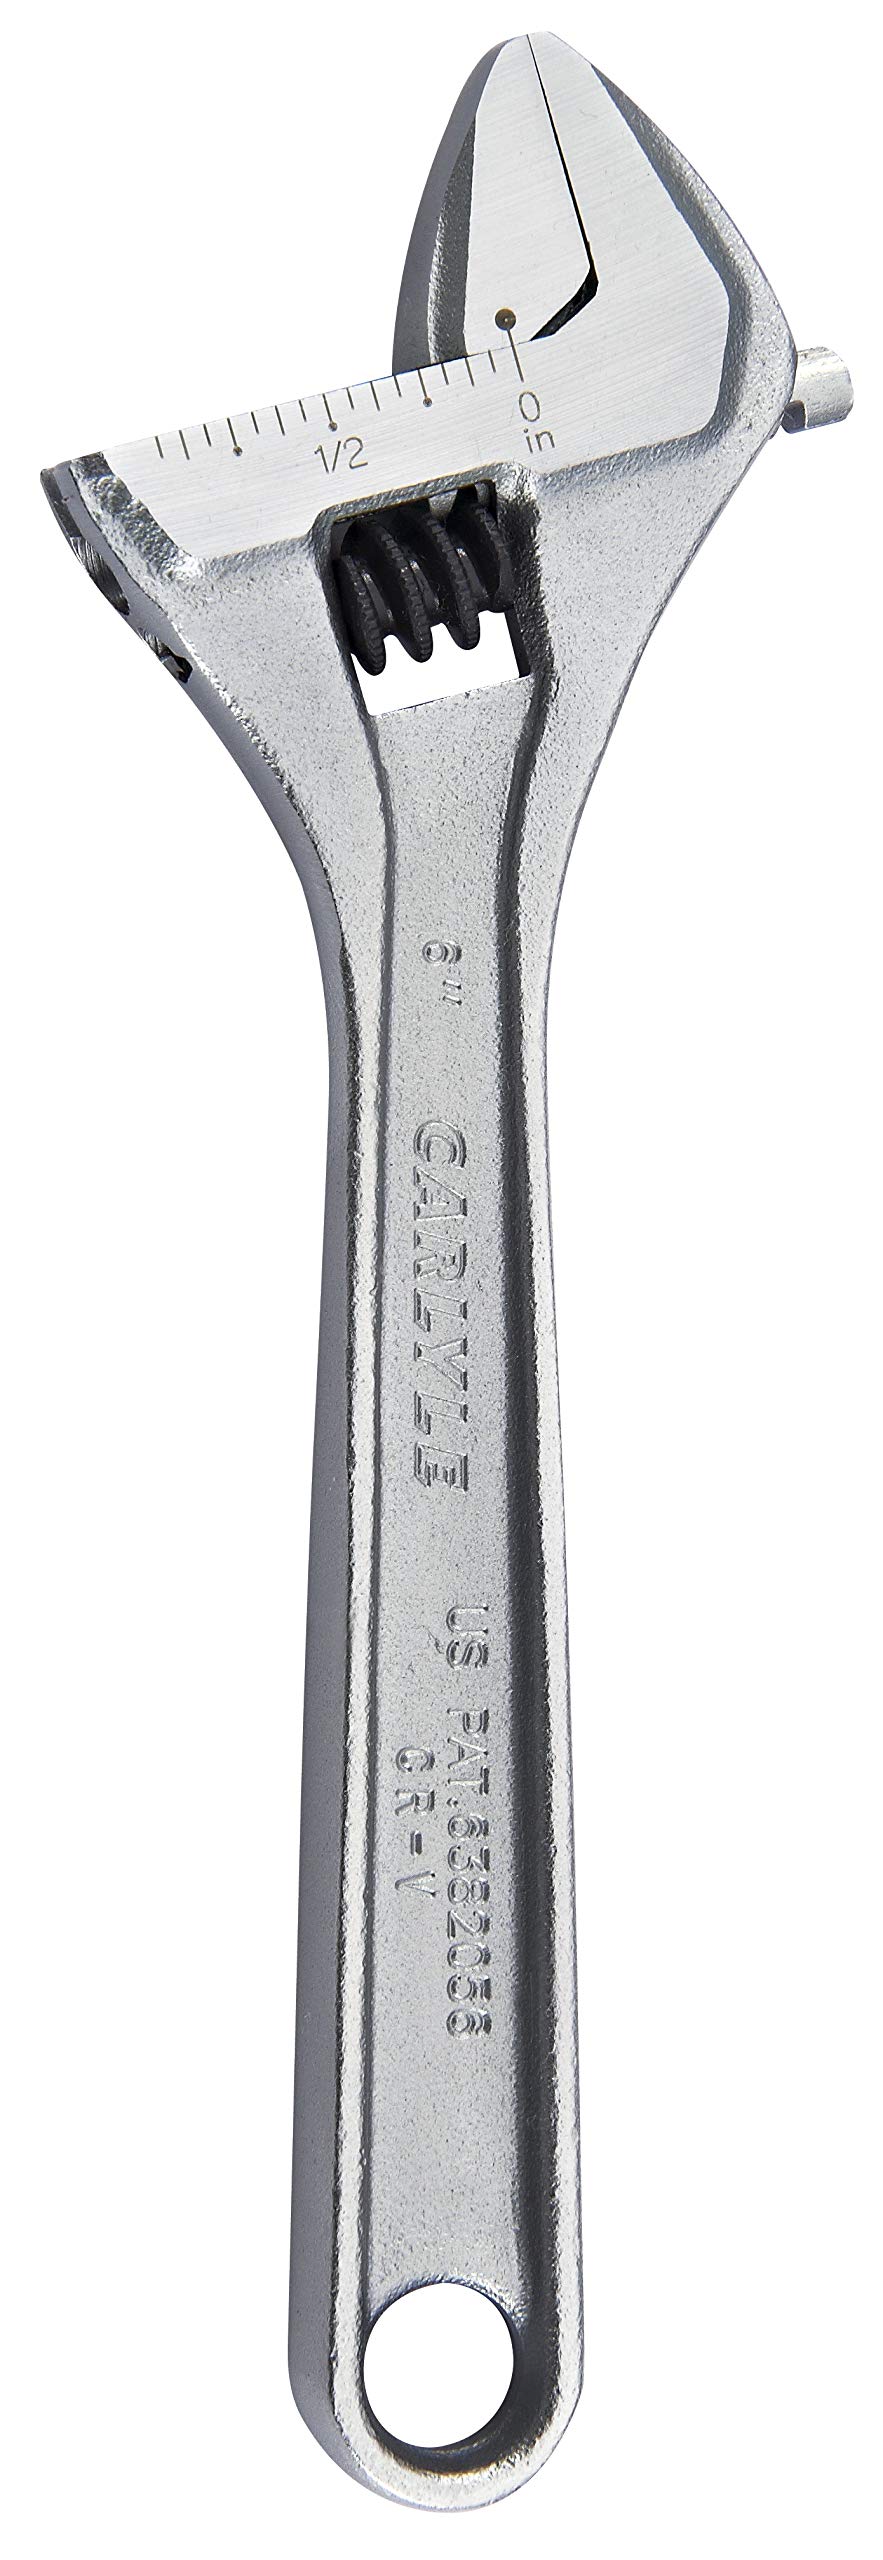 Carlyle Hand Tools AW6 Schraubenschlüssel. von Carlyle Hand Tools